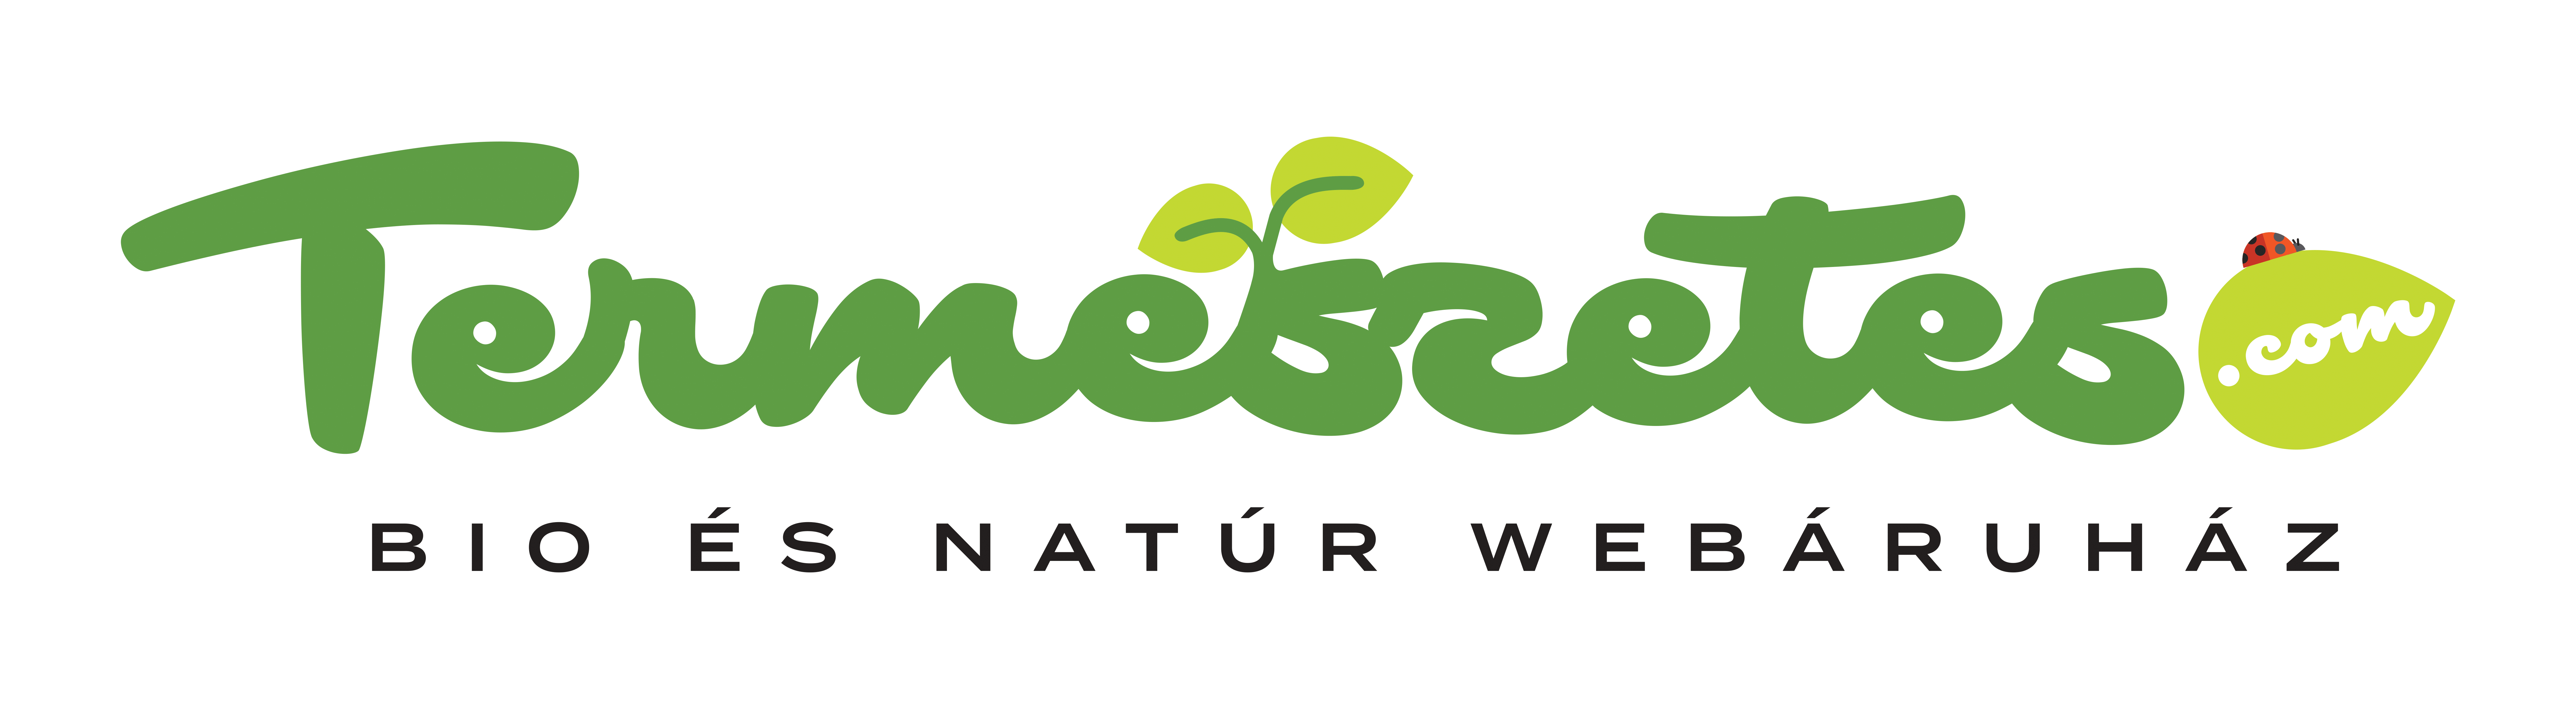 termeszetes.com logo